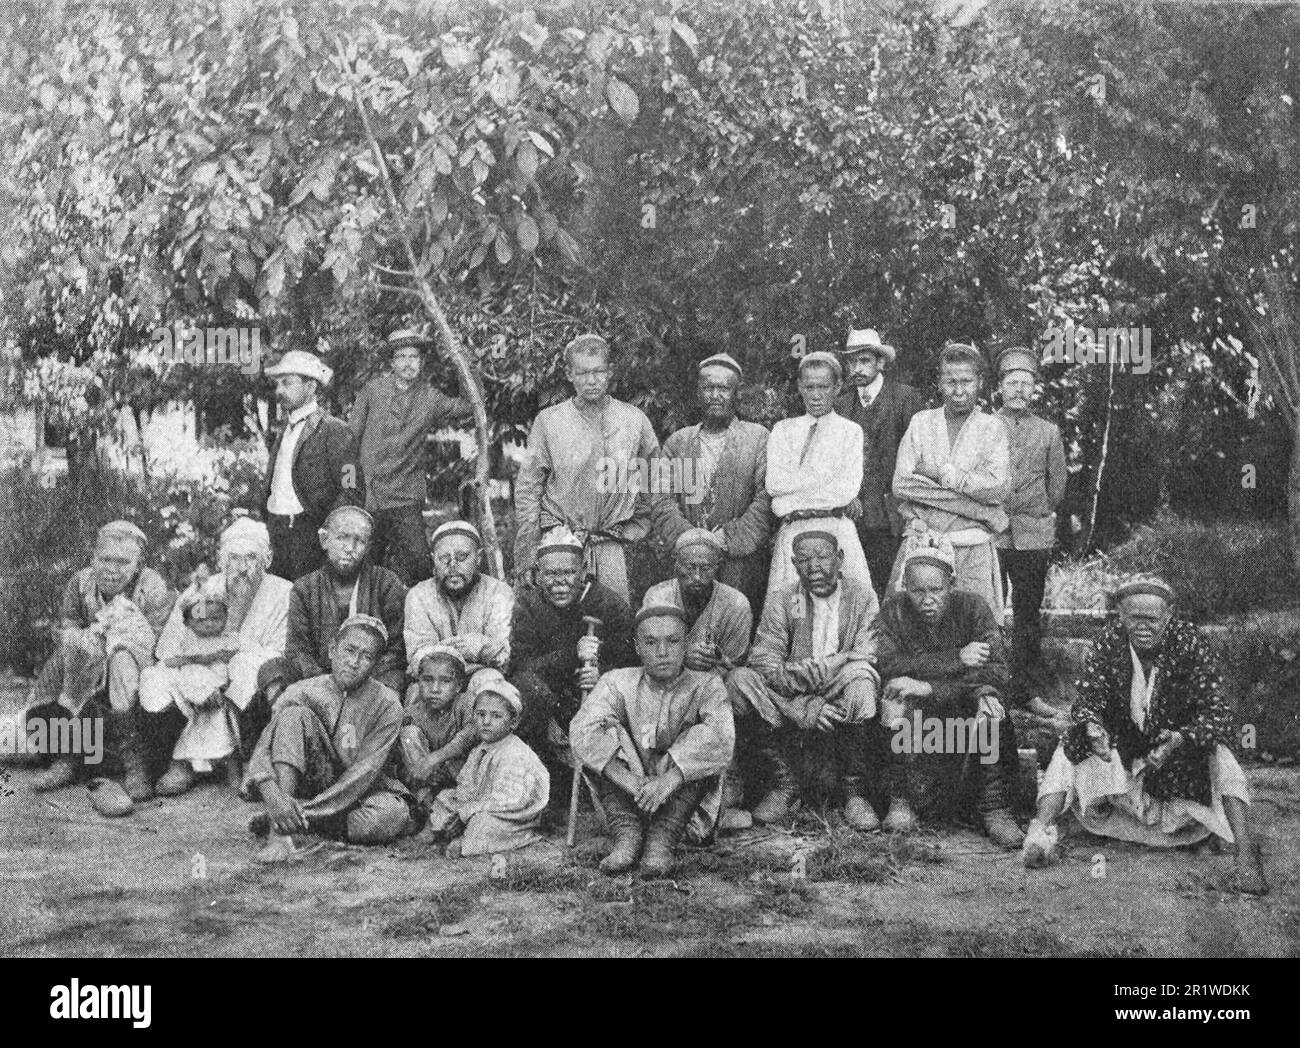 Un gruppo di lebbrosi a Tashkent. I dipendenti del 'corriere Turkestan' arrivati per ispezionare la colonia di lebbrosi indossano costumi europei. Foto dal 1910. Foto Stock